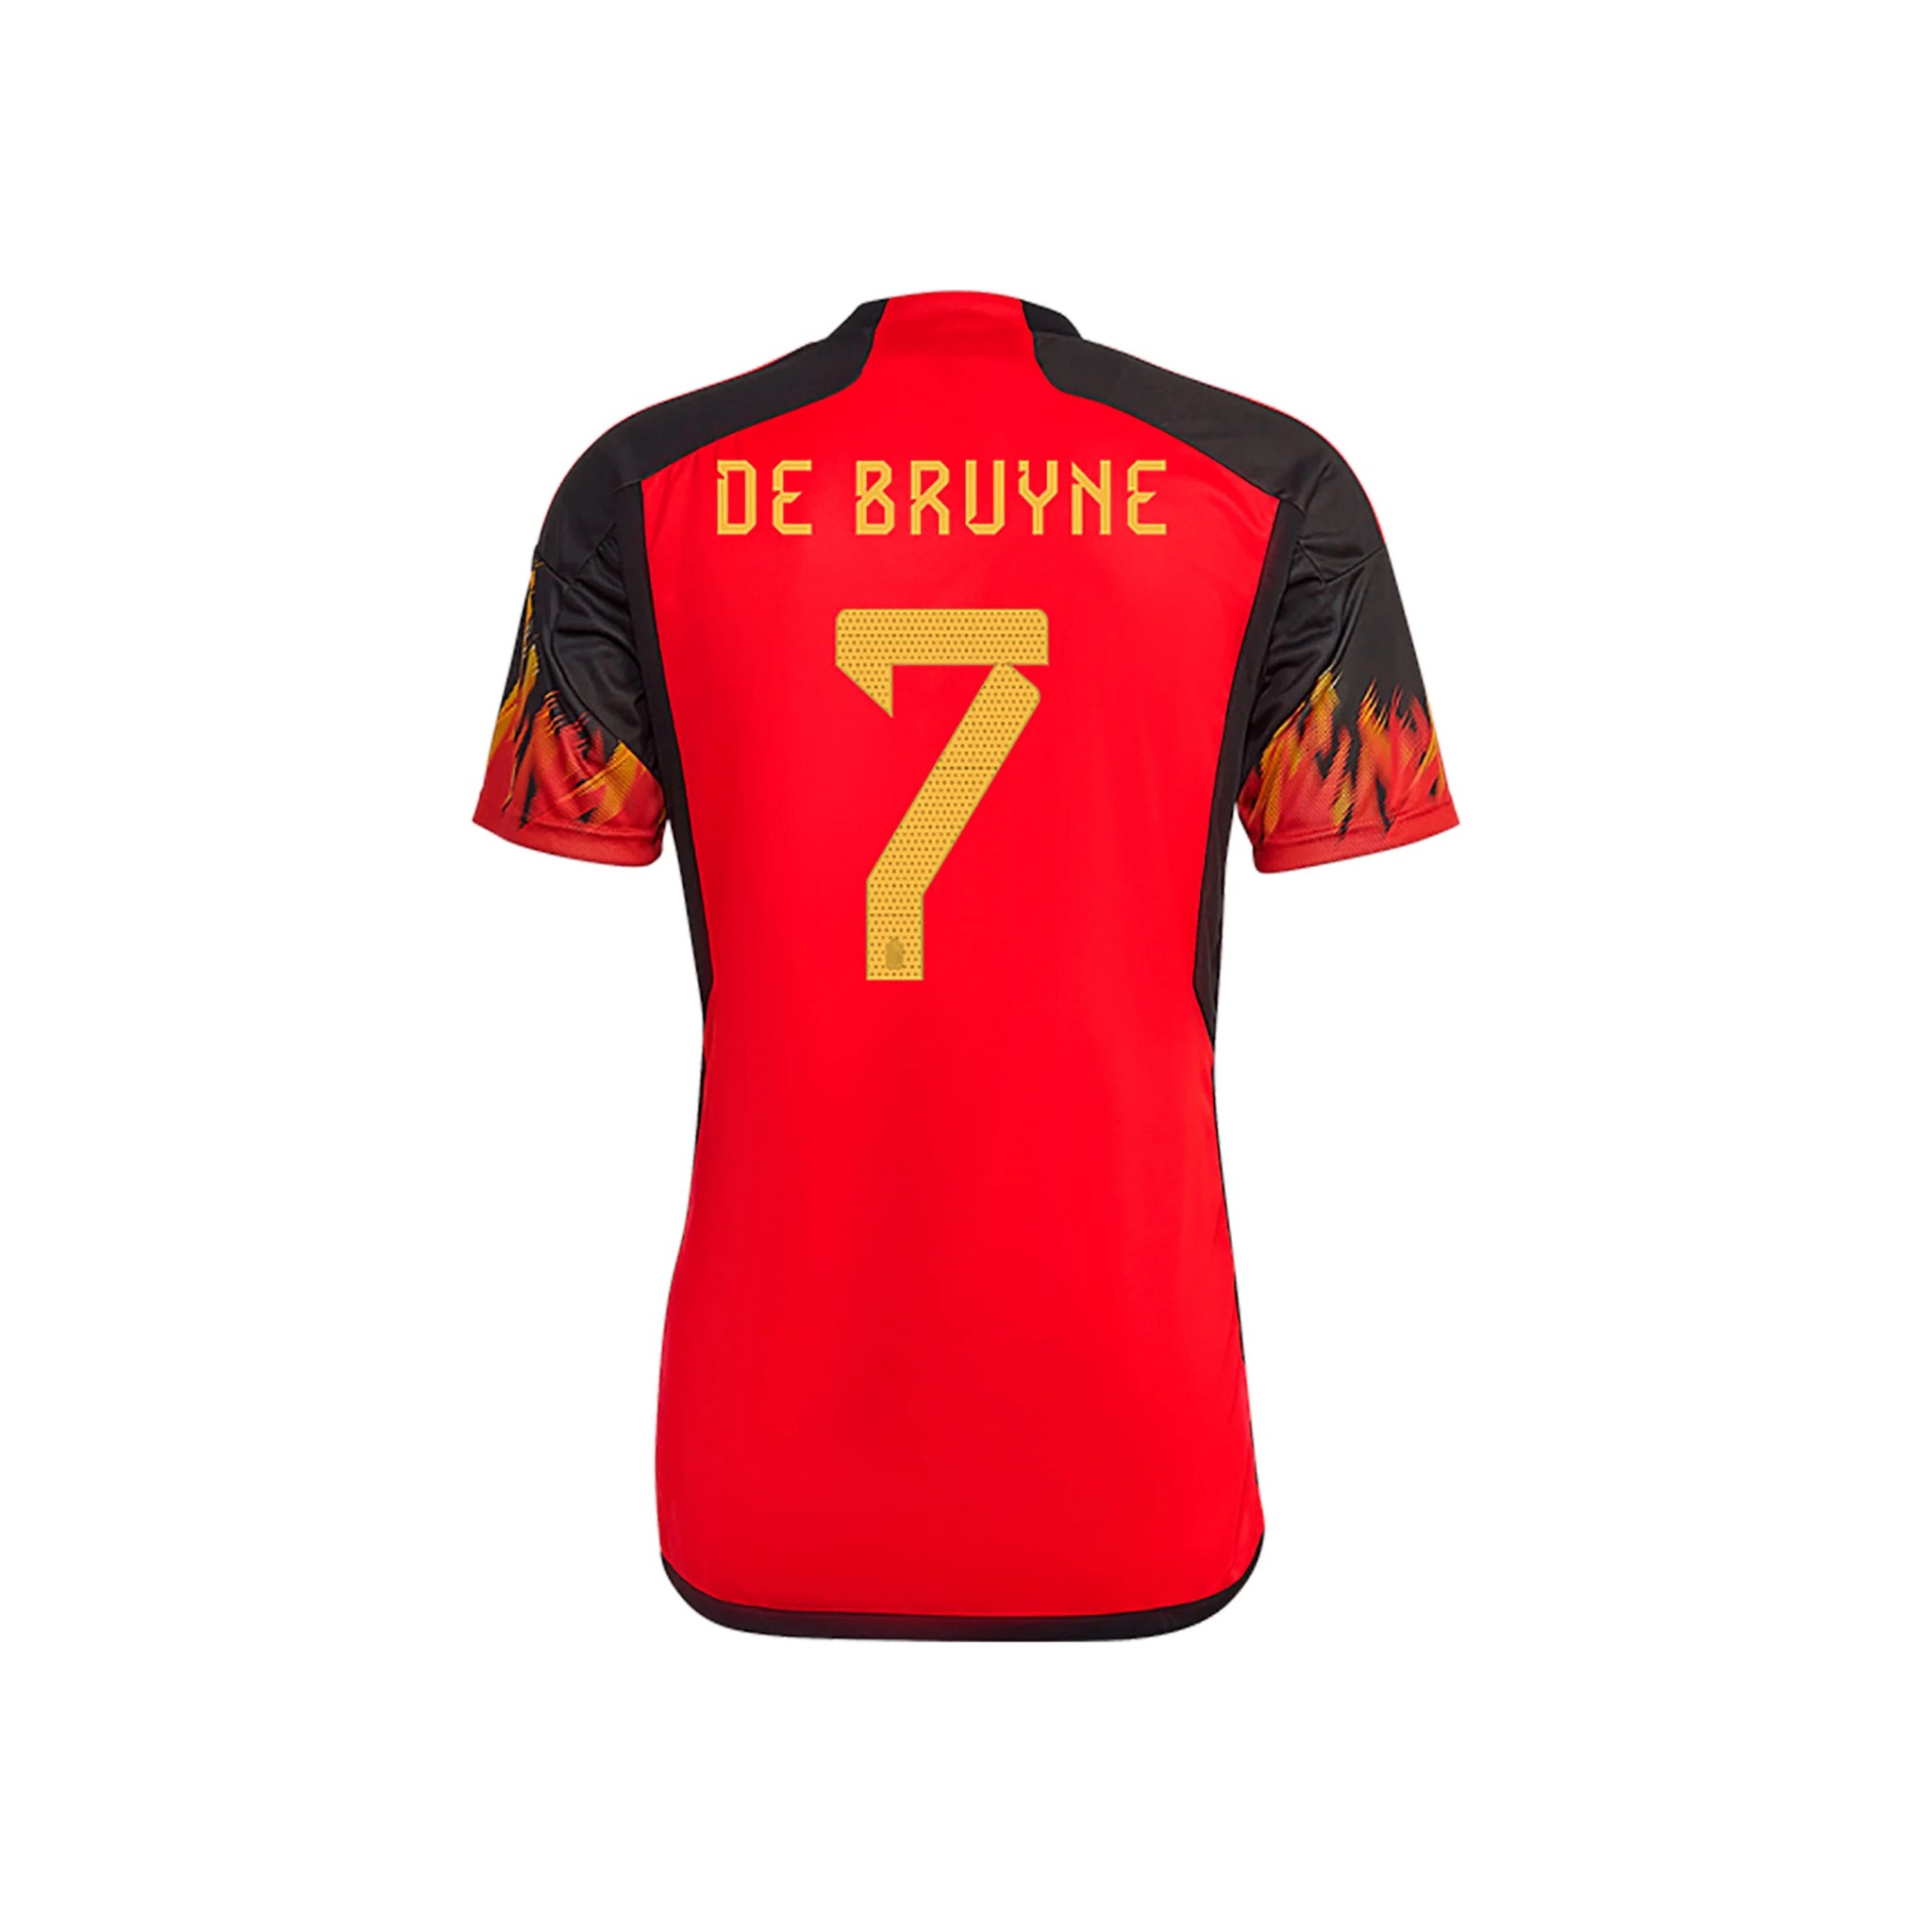 ADIDAS BELGIUM WORLD CUP 2022 Medium AWAY SHIRT DE BRUYNE #7